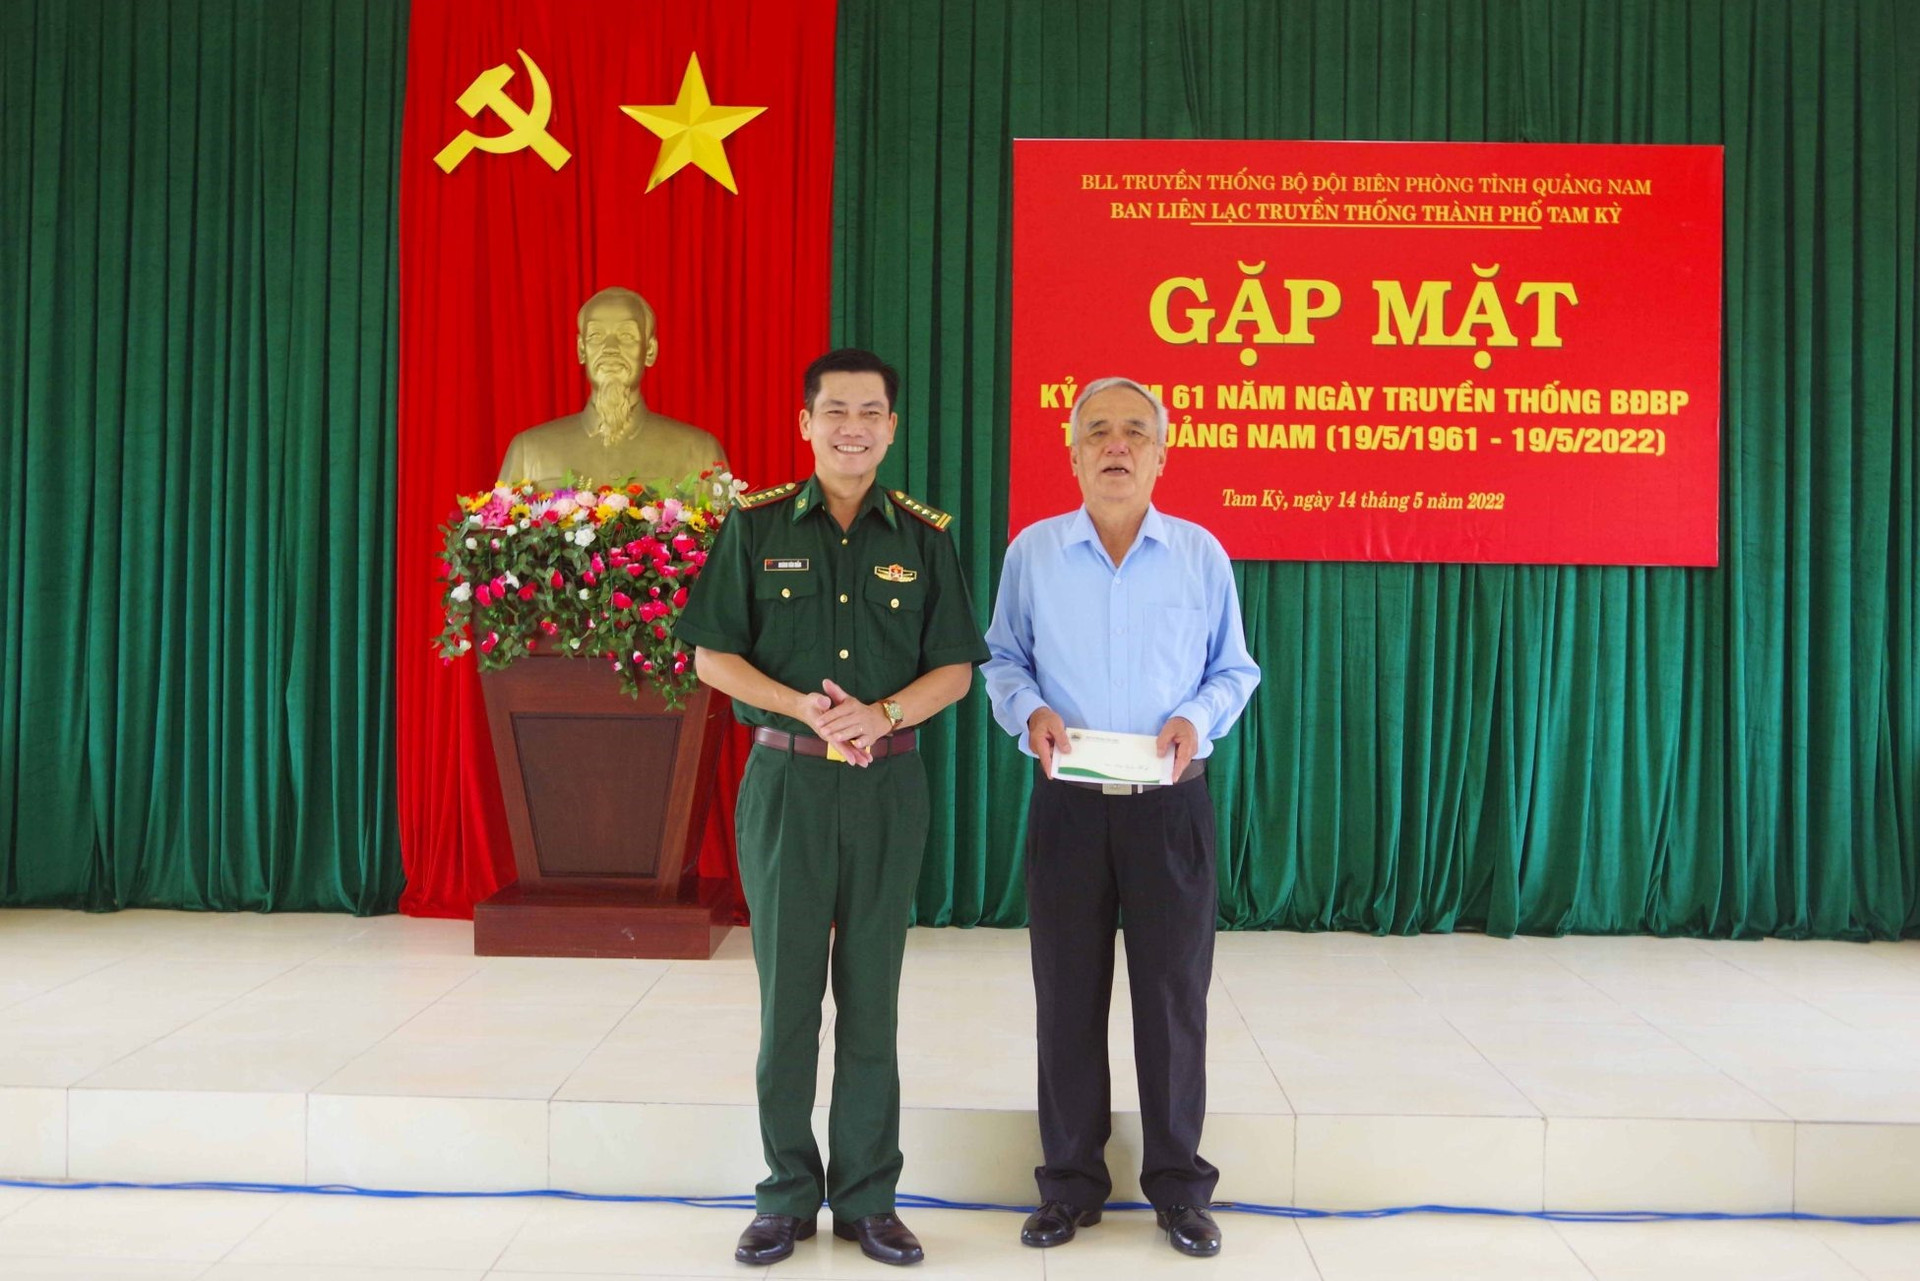 Đại tá Hoàng Văn Mẫn – Chính ủy BĐBP tỉnh tặng quà cho Ban liên lạc truyền thống BĐBP thành phố Tam Kỳ.